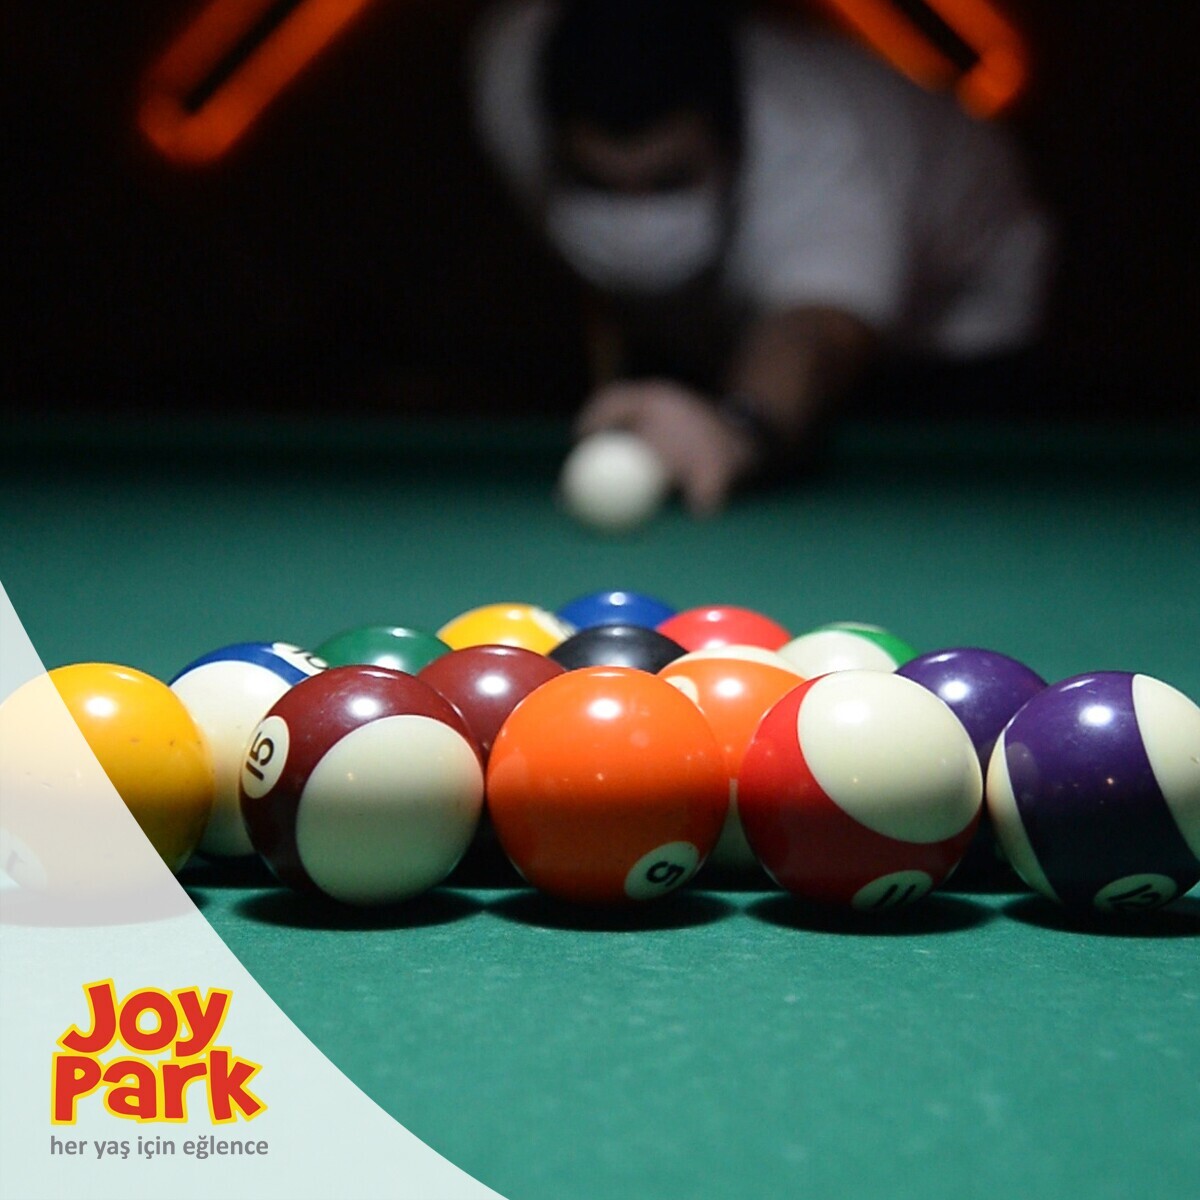 JoyPark İstanbul Şubelerinde Geçerli 350 TL'lik Oyun Kartı 299 TL!